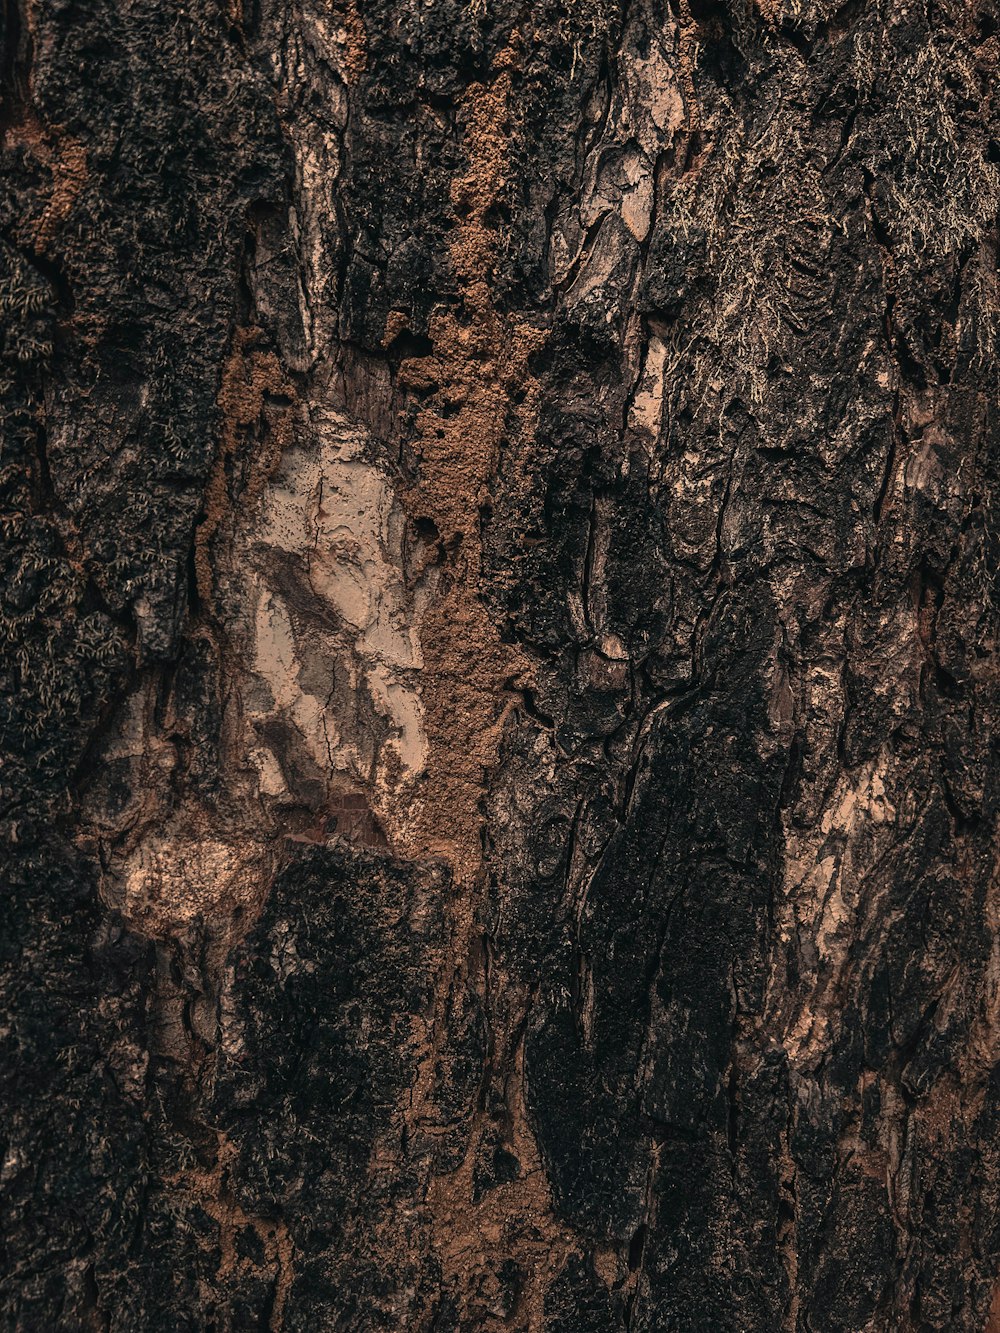 un primer plano de la corteza de un árbol con una mancha blanca en la corteza